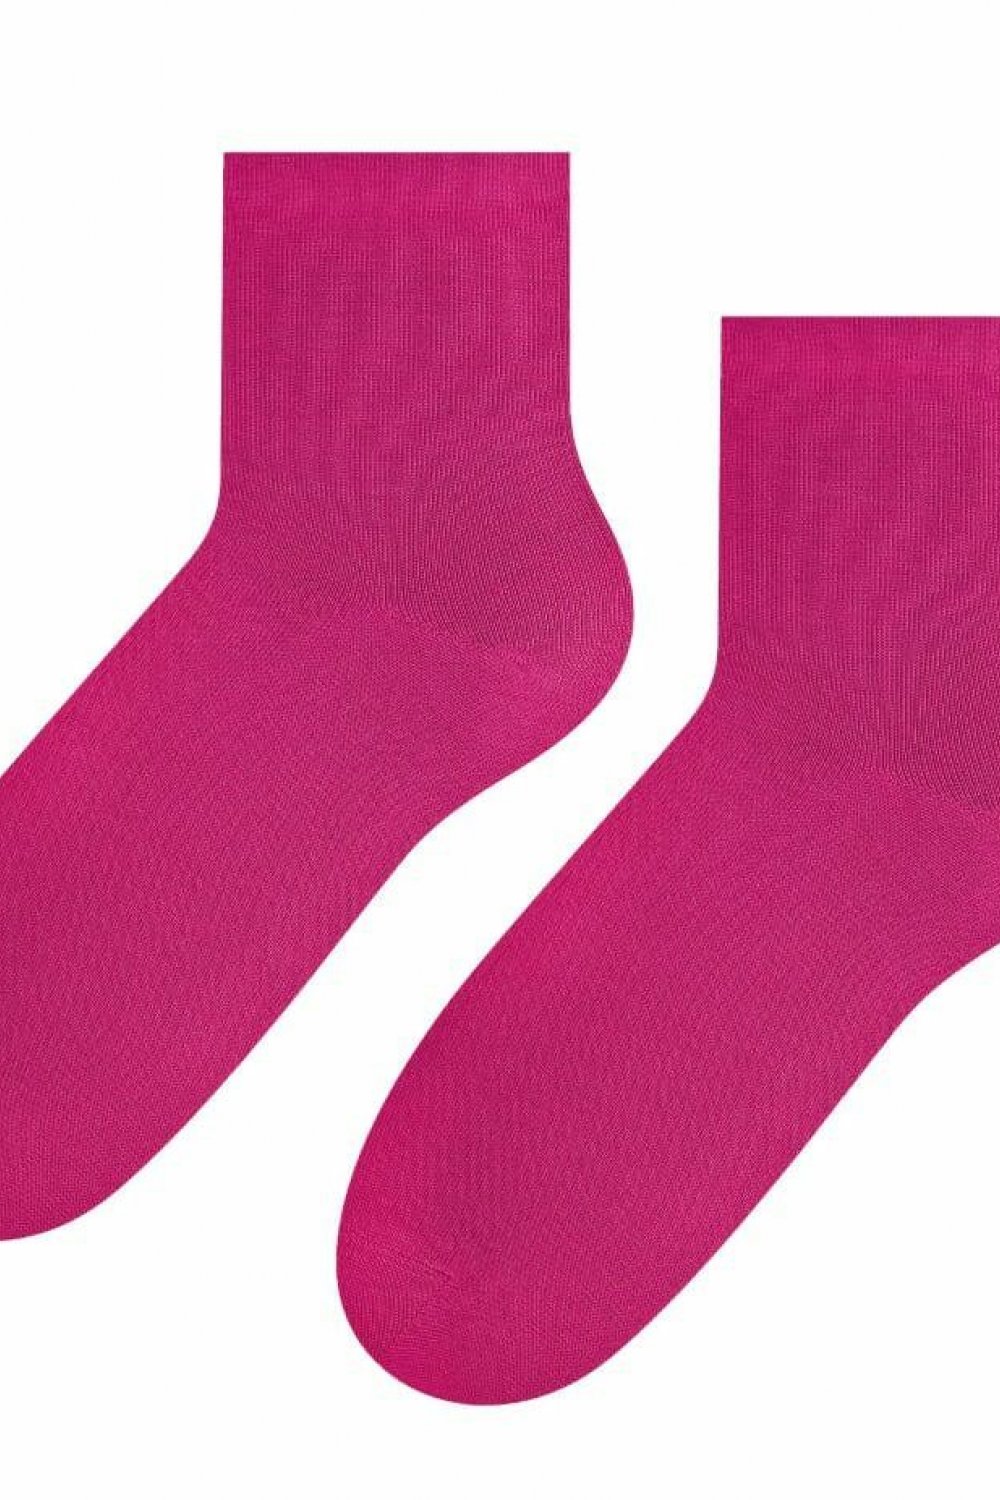 Șosete și ciorapi de damă 037 pink